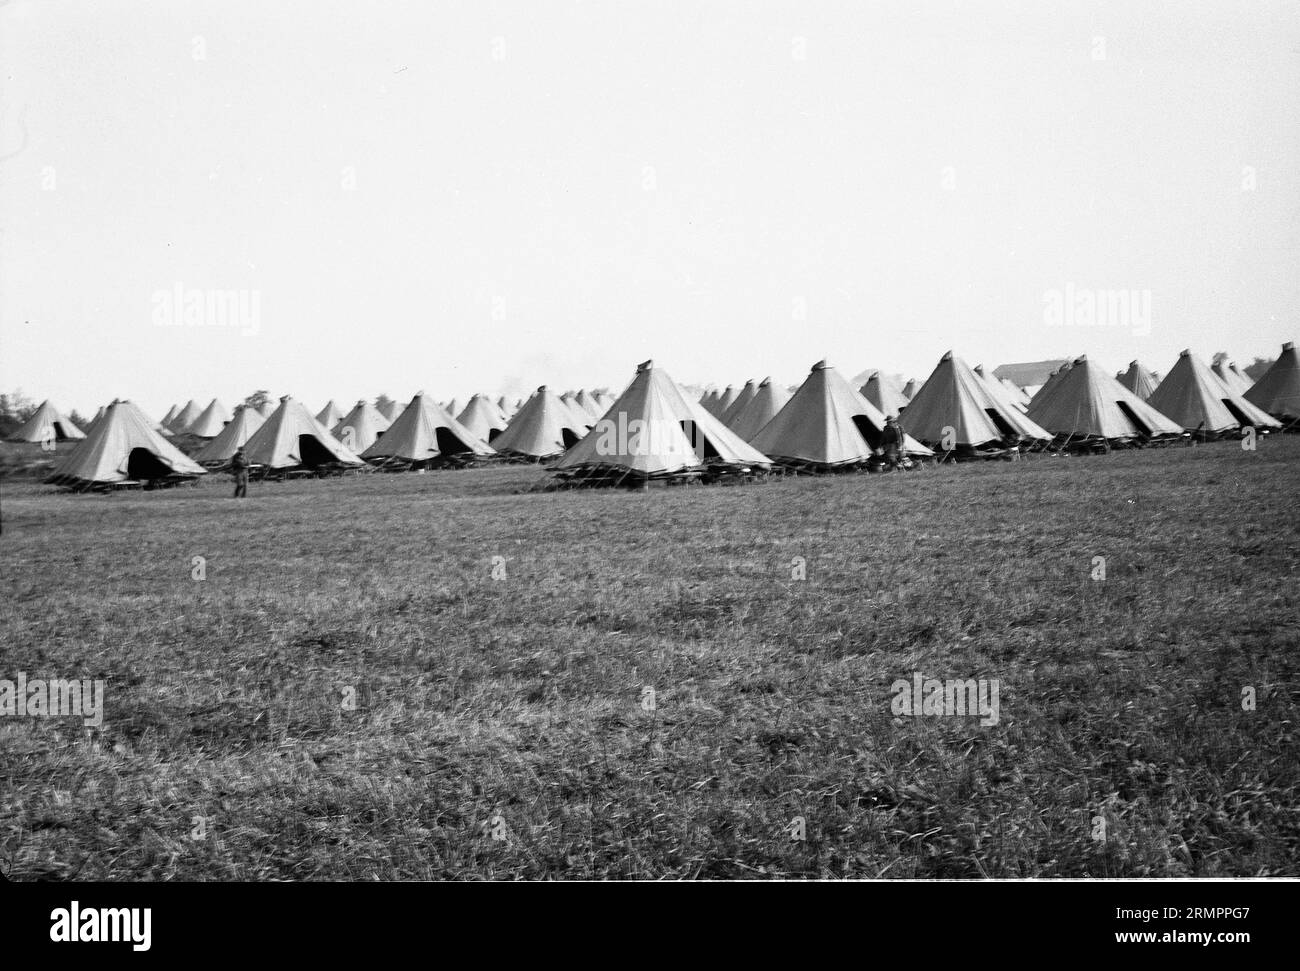 Lignes de tentes. Les membres de la 114e division d’infanterie de l’armée des États-Unis s’entraînent pour combattre l’Allemagne en Europe pendant la Seconde Guerre mondiale. Banque D'Images